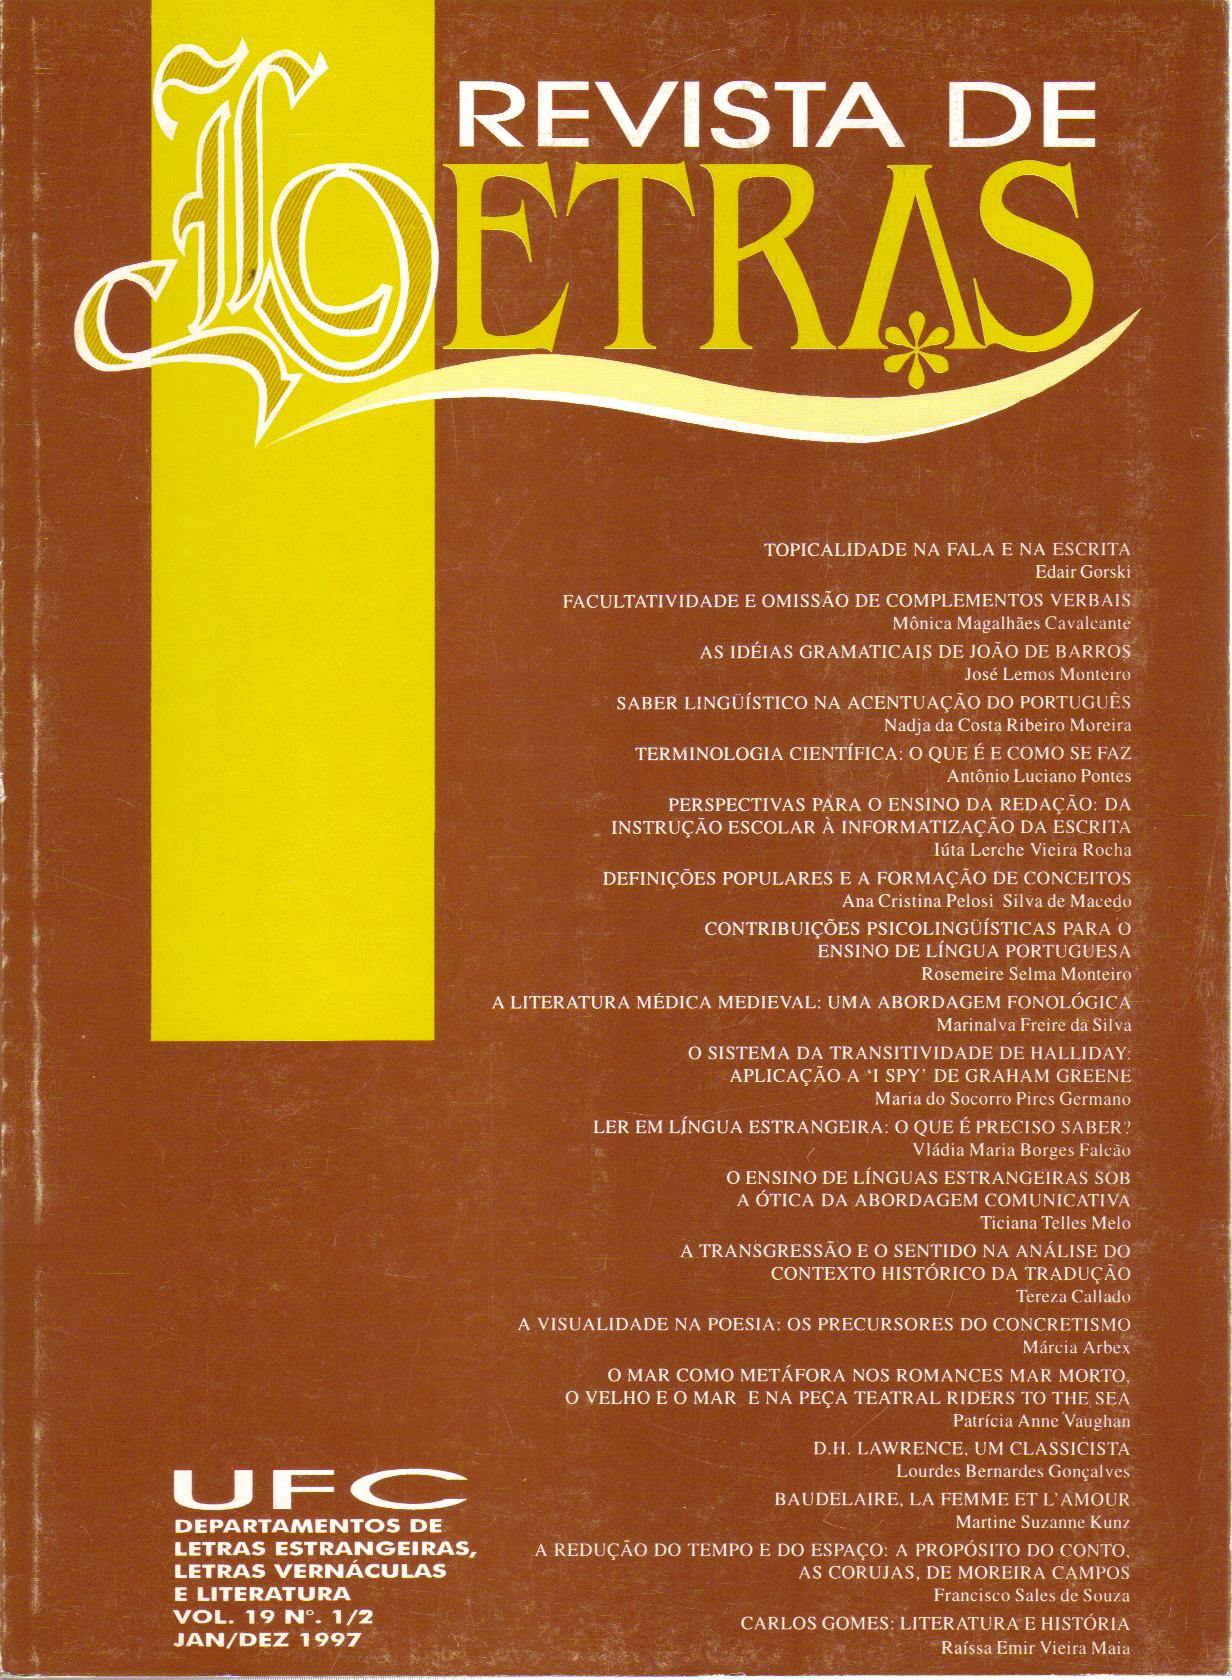 					Visualizar v. 1 n. 15 (1993): REVISTA DE LETRAS V. 1/8, N. 15 (1990 a 1993)
				